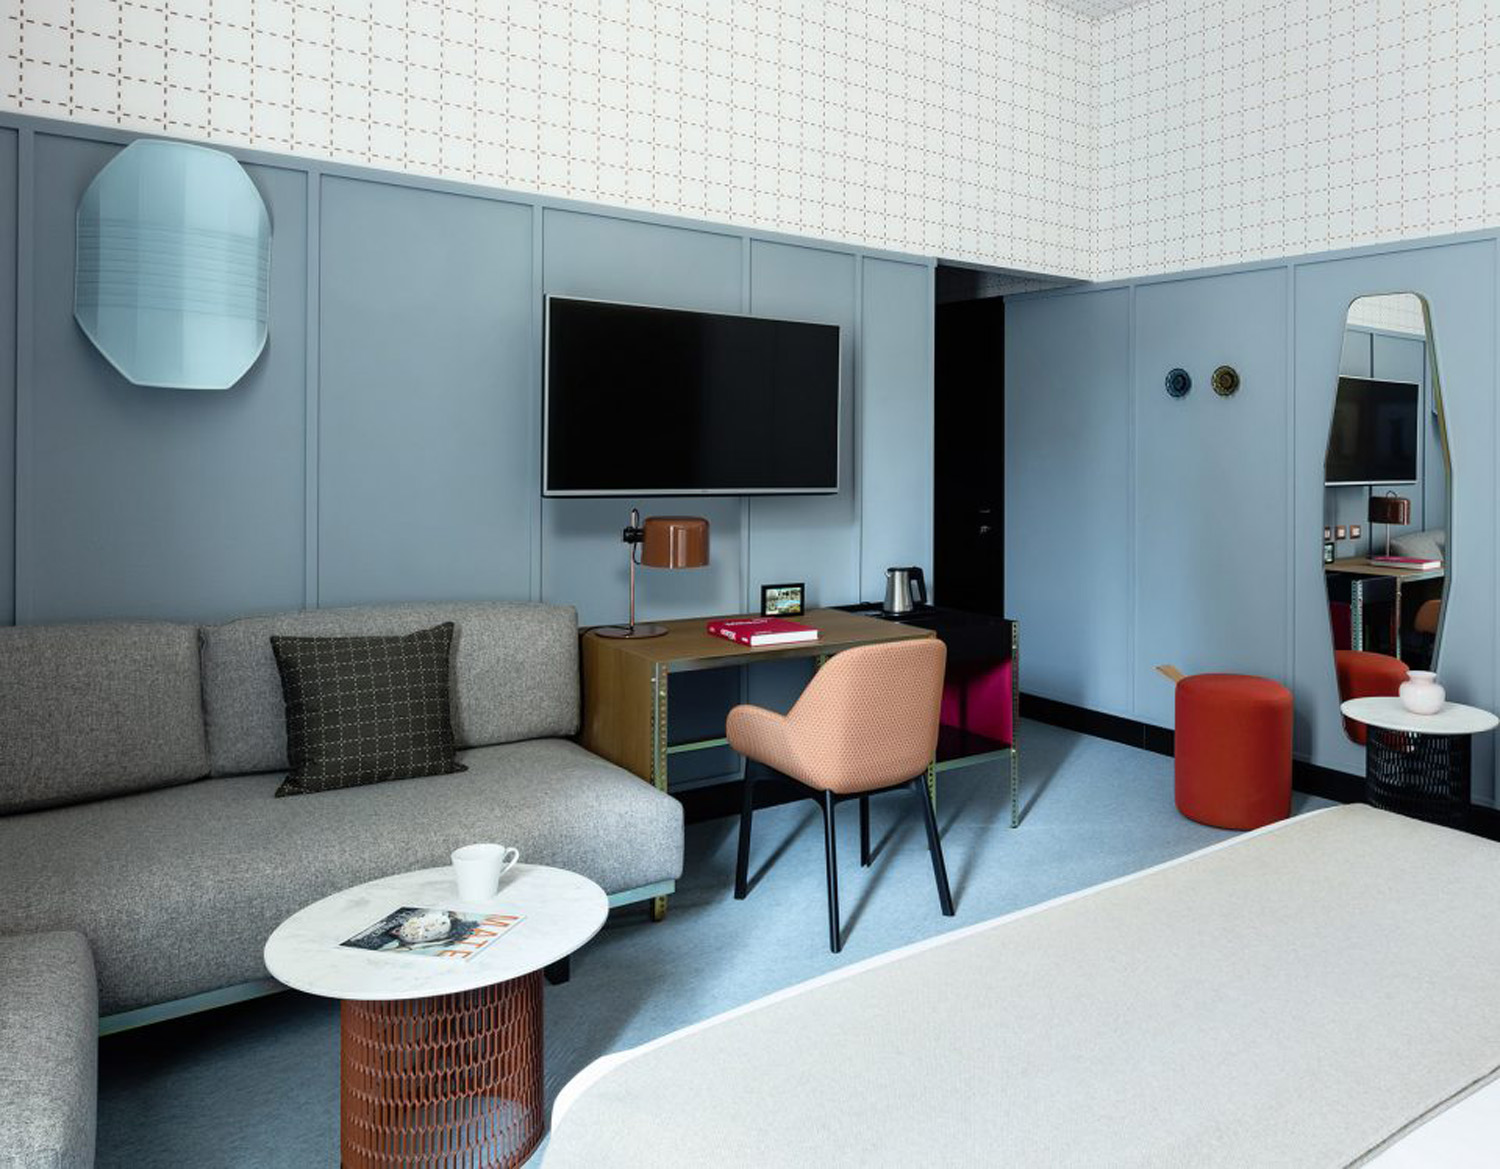 Interior design of hotel room